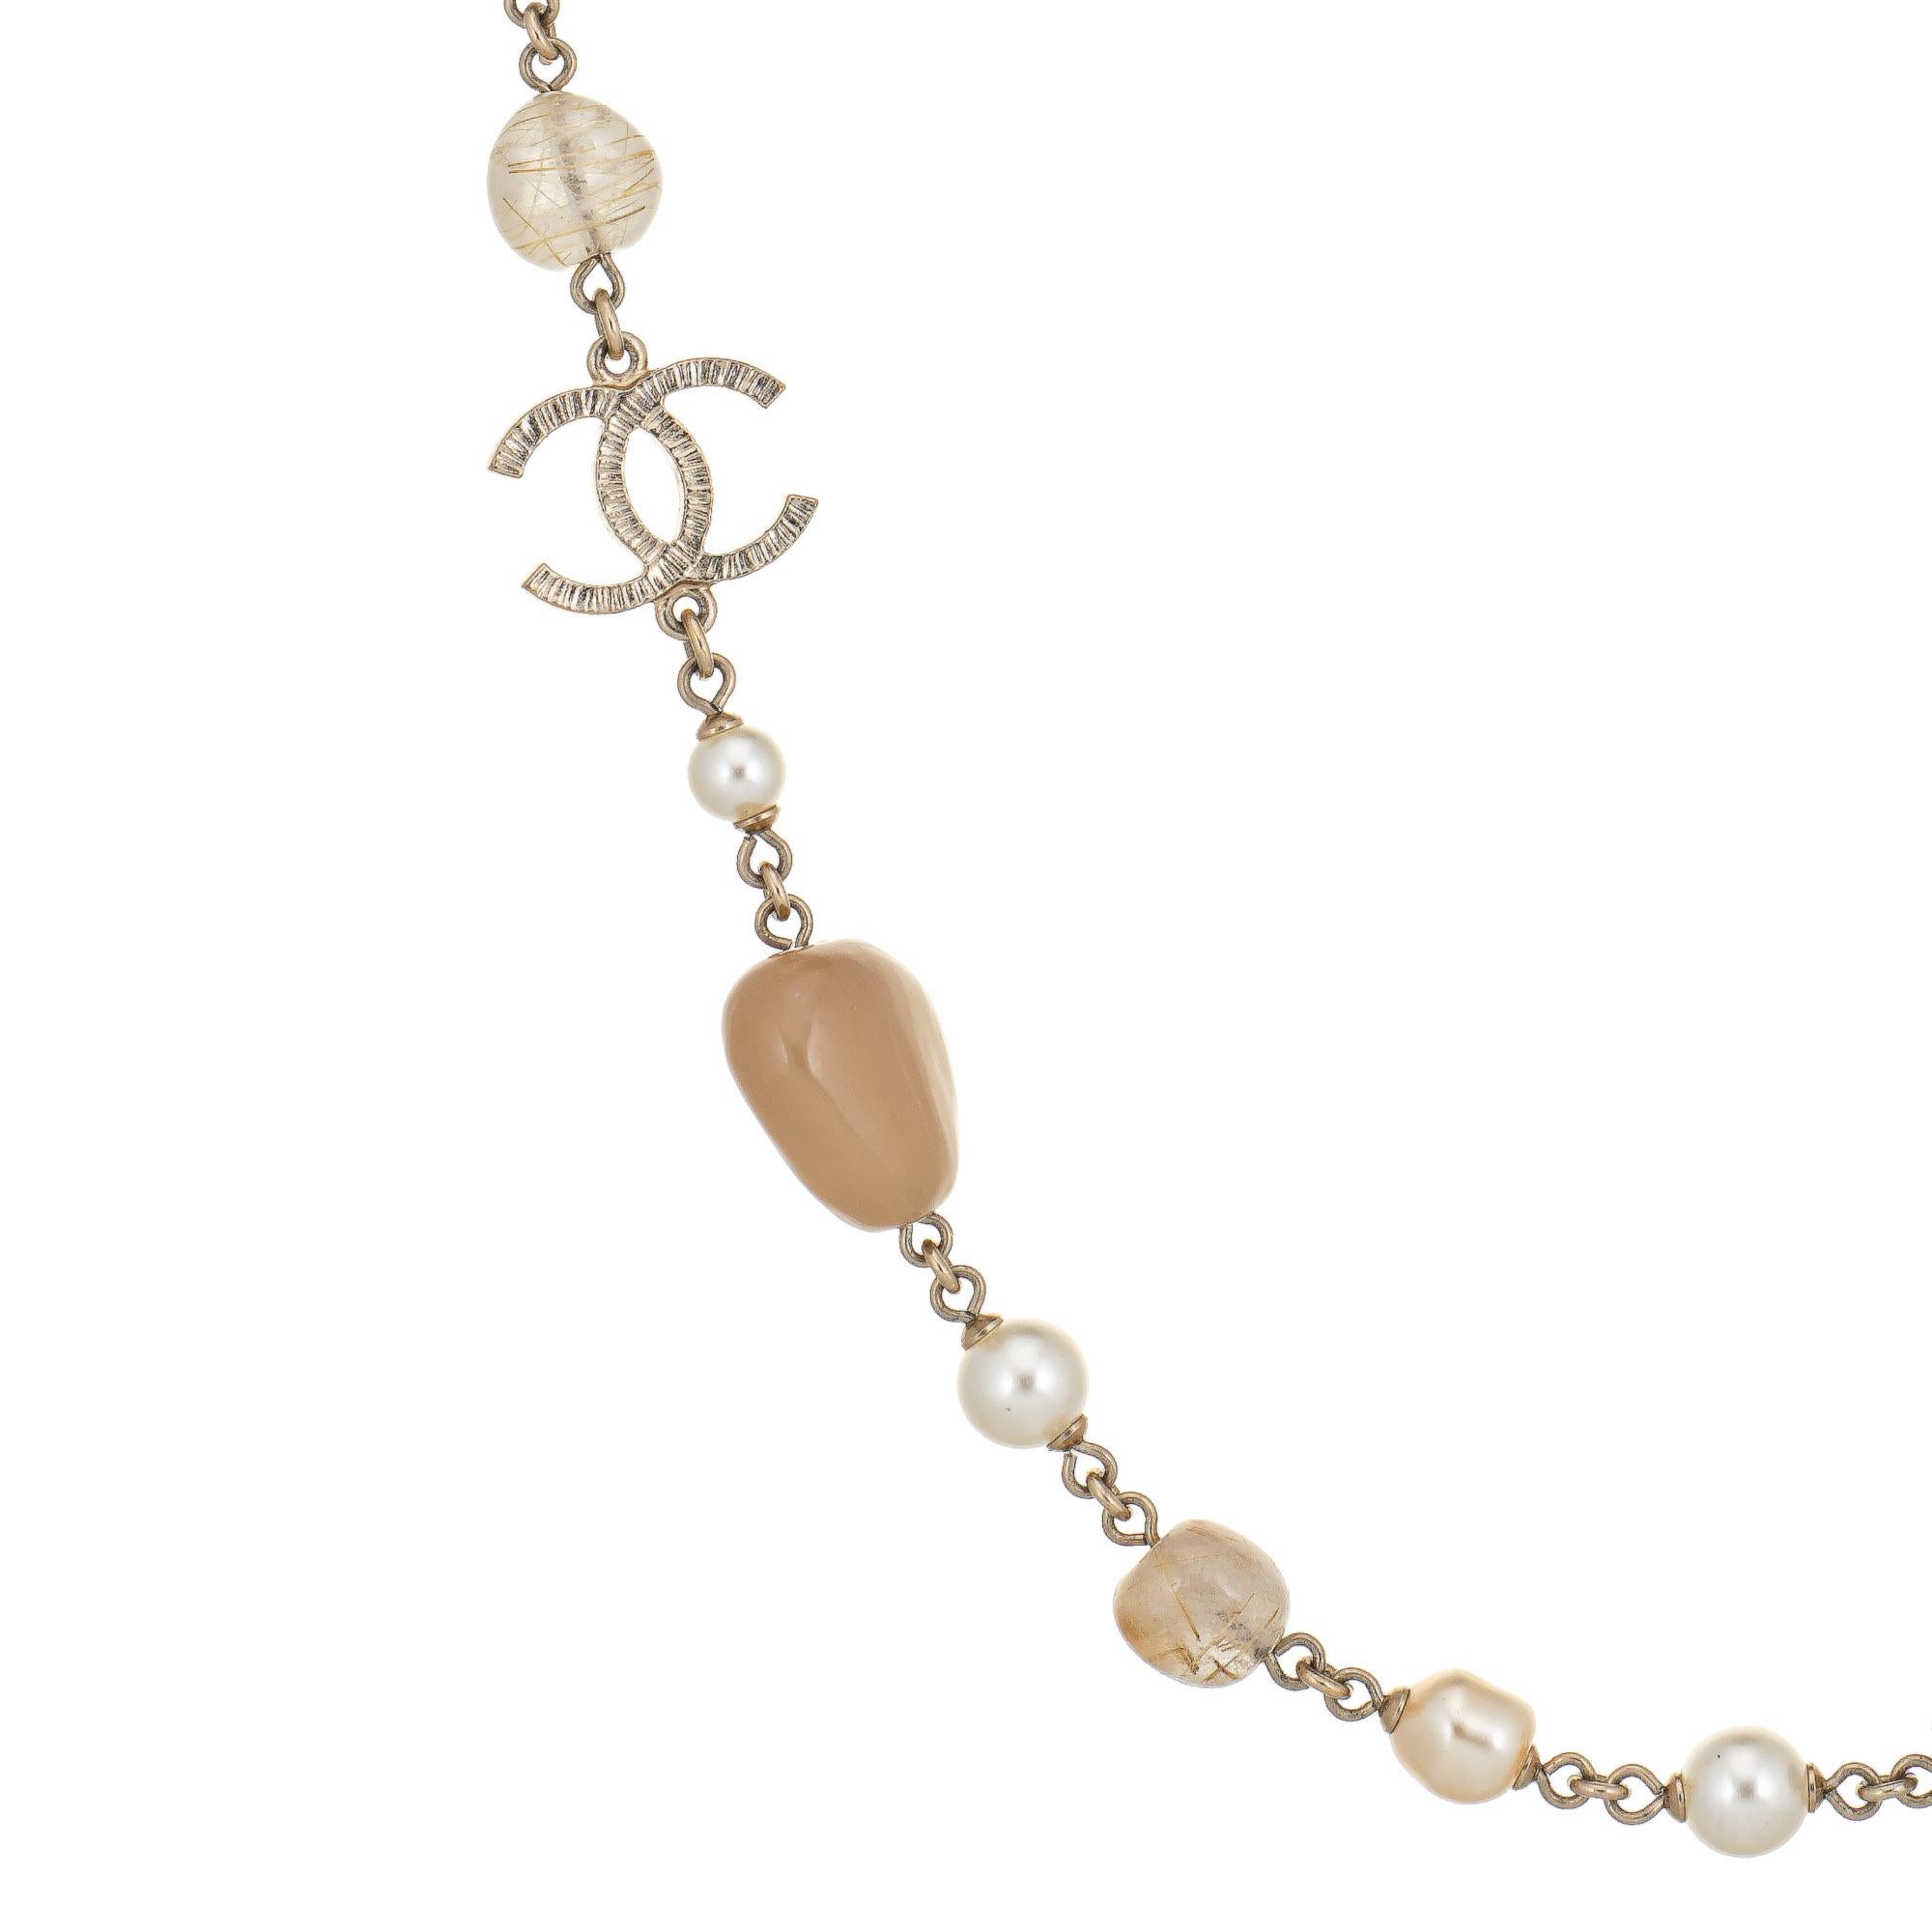 Gebrauchte Chanel Halskette mit Kunstperlen und Perlen in Gelbgold (circa 2014). 

Mit einer Länge von 41 Zoll besteht die Kette aus 6 bis 7 mm großen runden und barocken Kunstperlen mit 9 bis 12 mm großen Harzperlen in einem klaren bis sandfarbenen